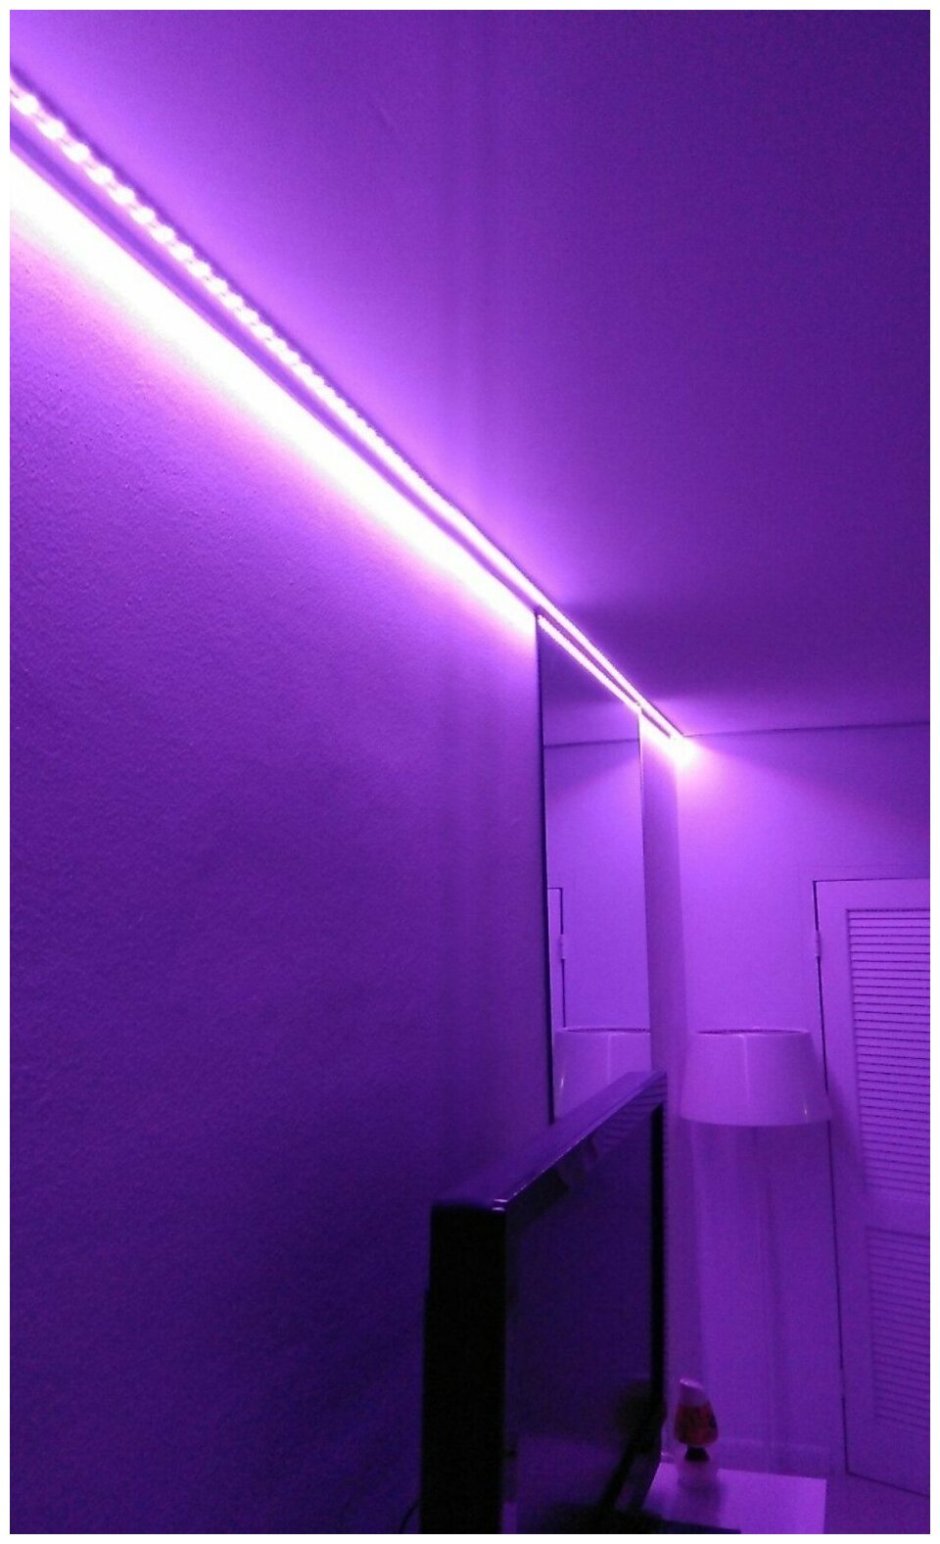 РГБ подсветка для комнаты